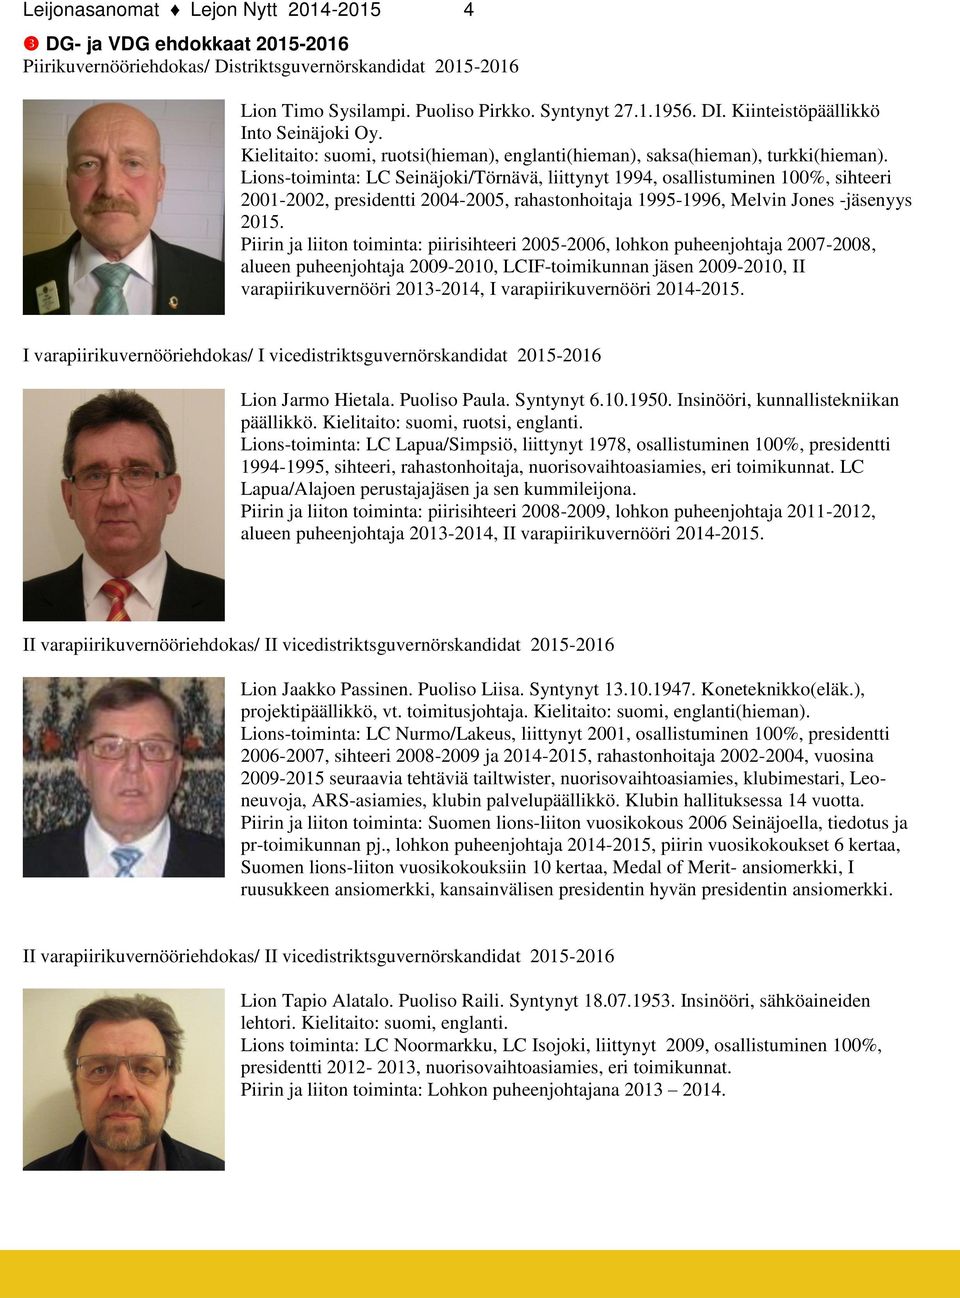 Lions-toiminta: LC Seinäjoki/Törnävä, liittynyt 1994, osallistuminen 100%, sihteeri 2001-2002, presidentti 2004-2005, rahastonhoitaja 1995-1996, Melvin Jones -jäsenyys 2015.